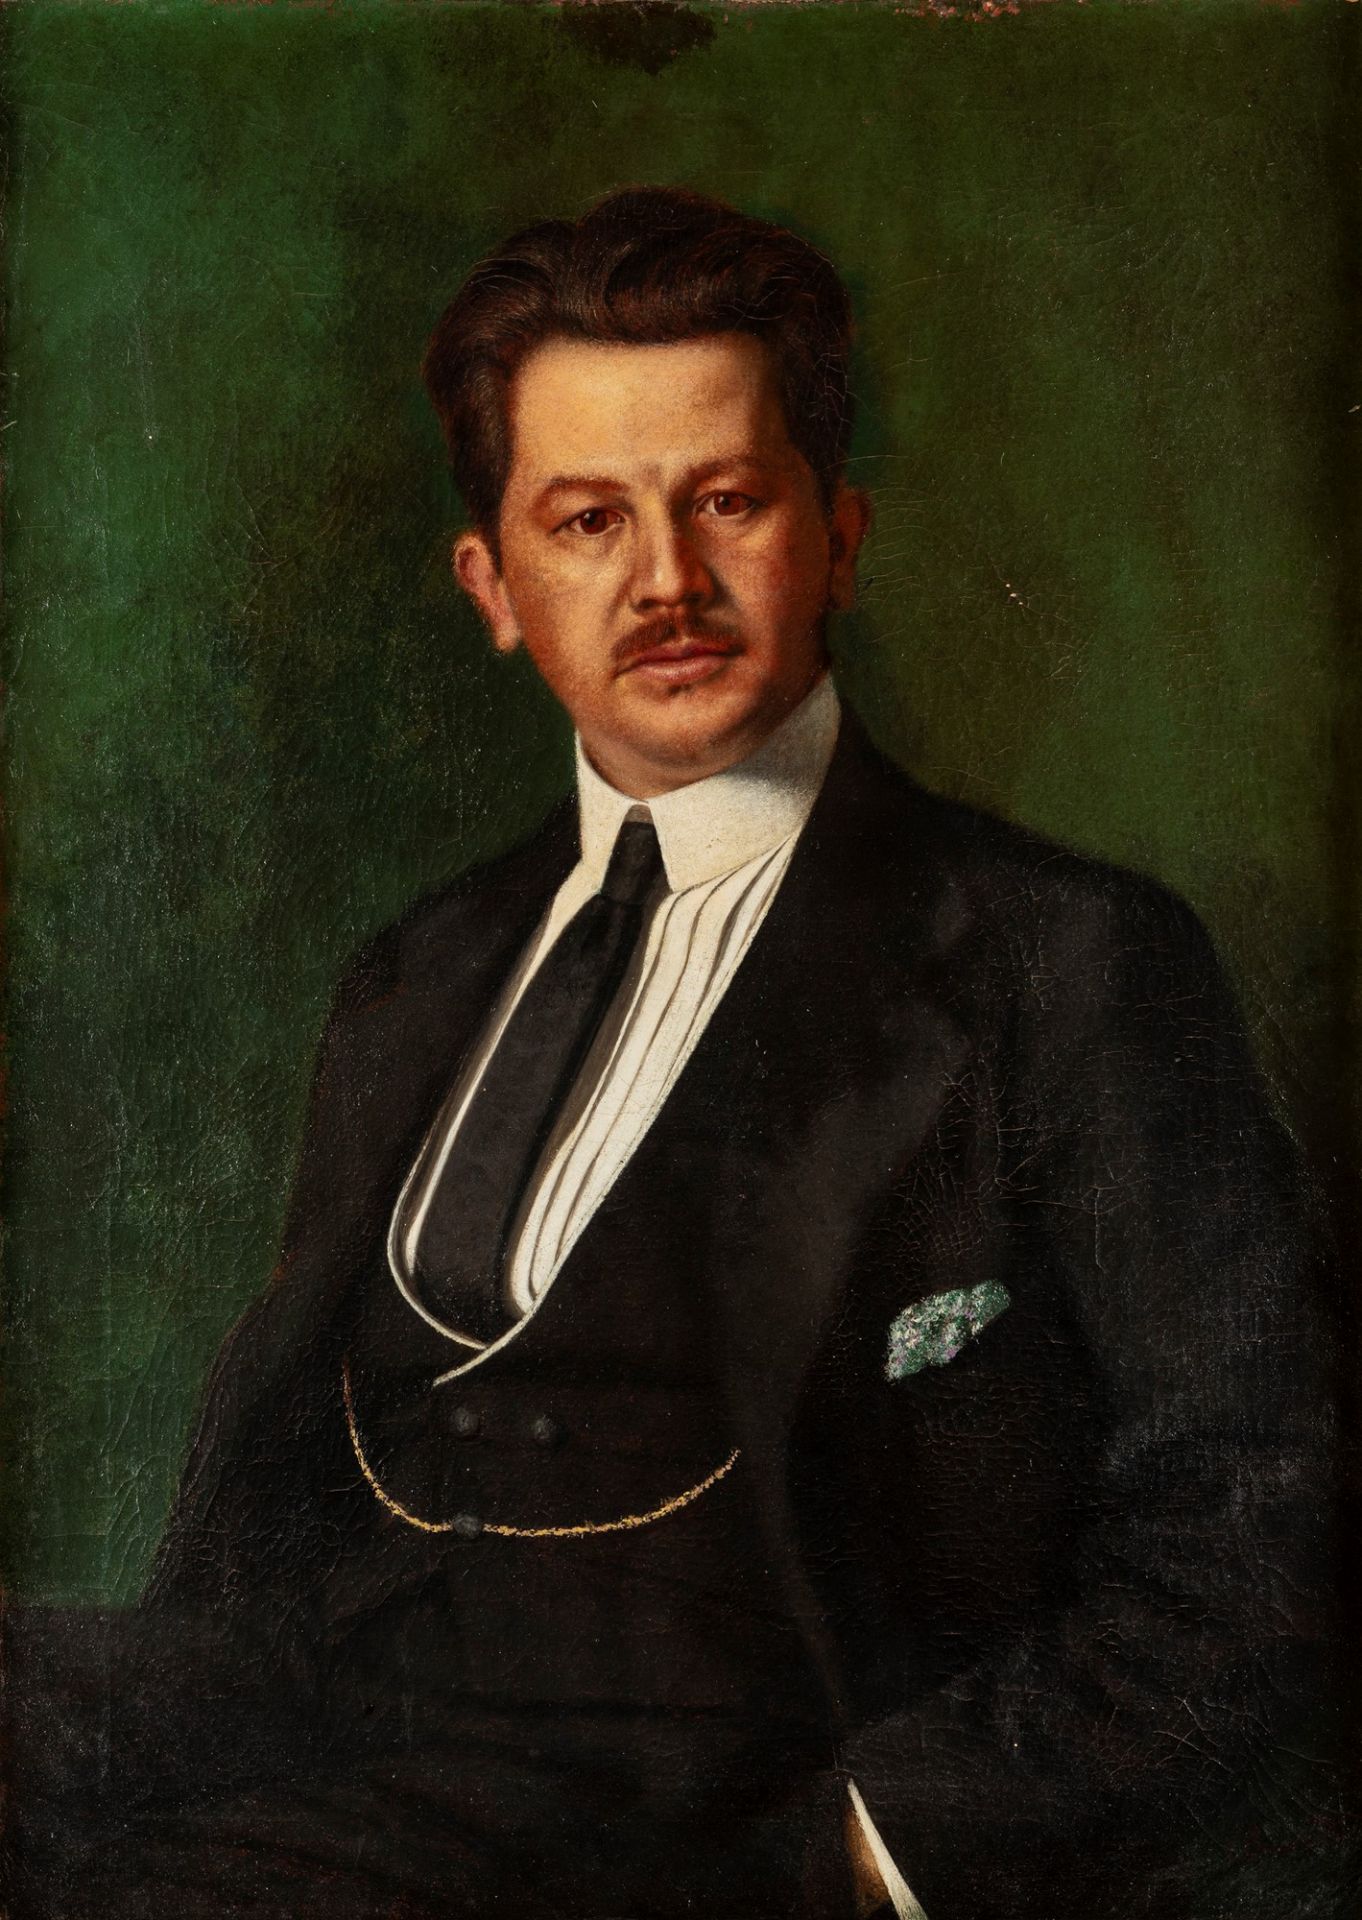 Carlo Bugatti (Milano 1855-Molsheim 1940) - Male portrait